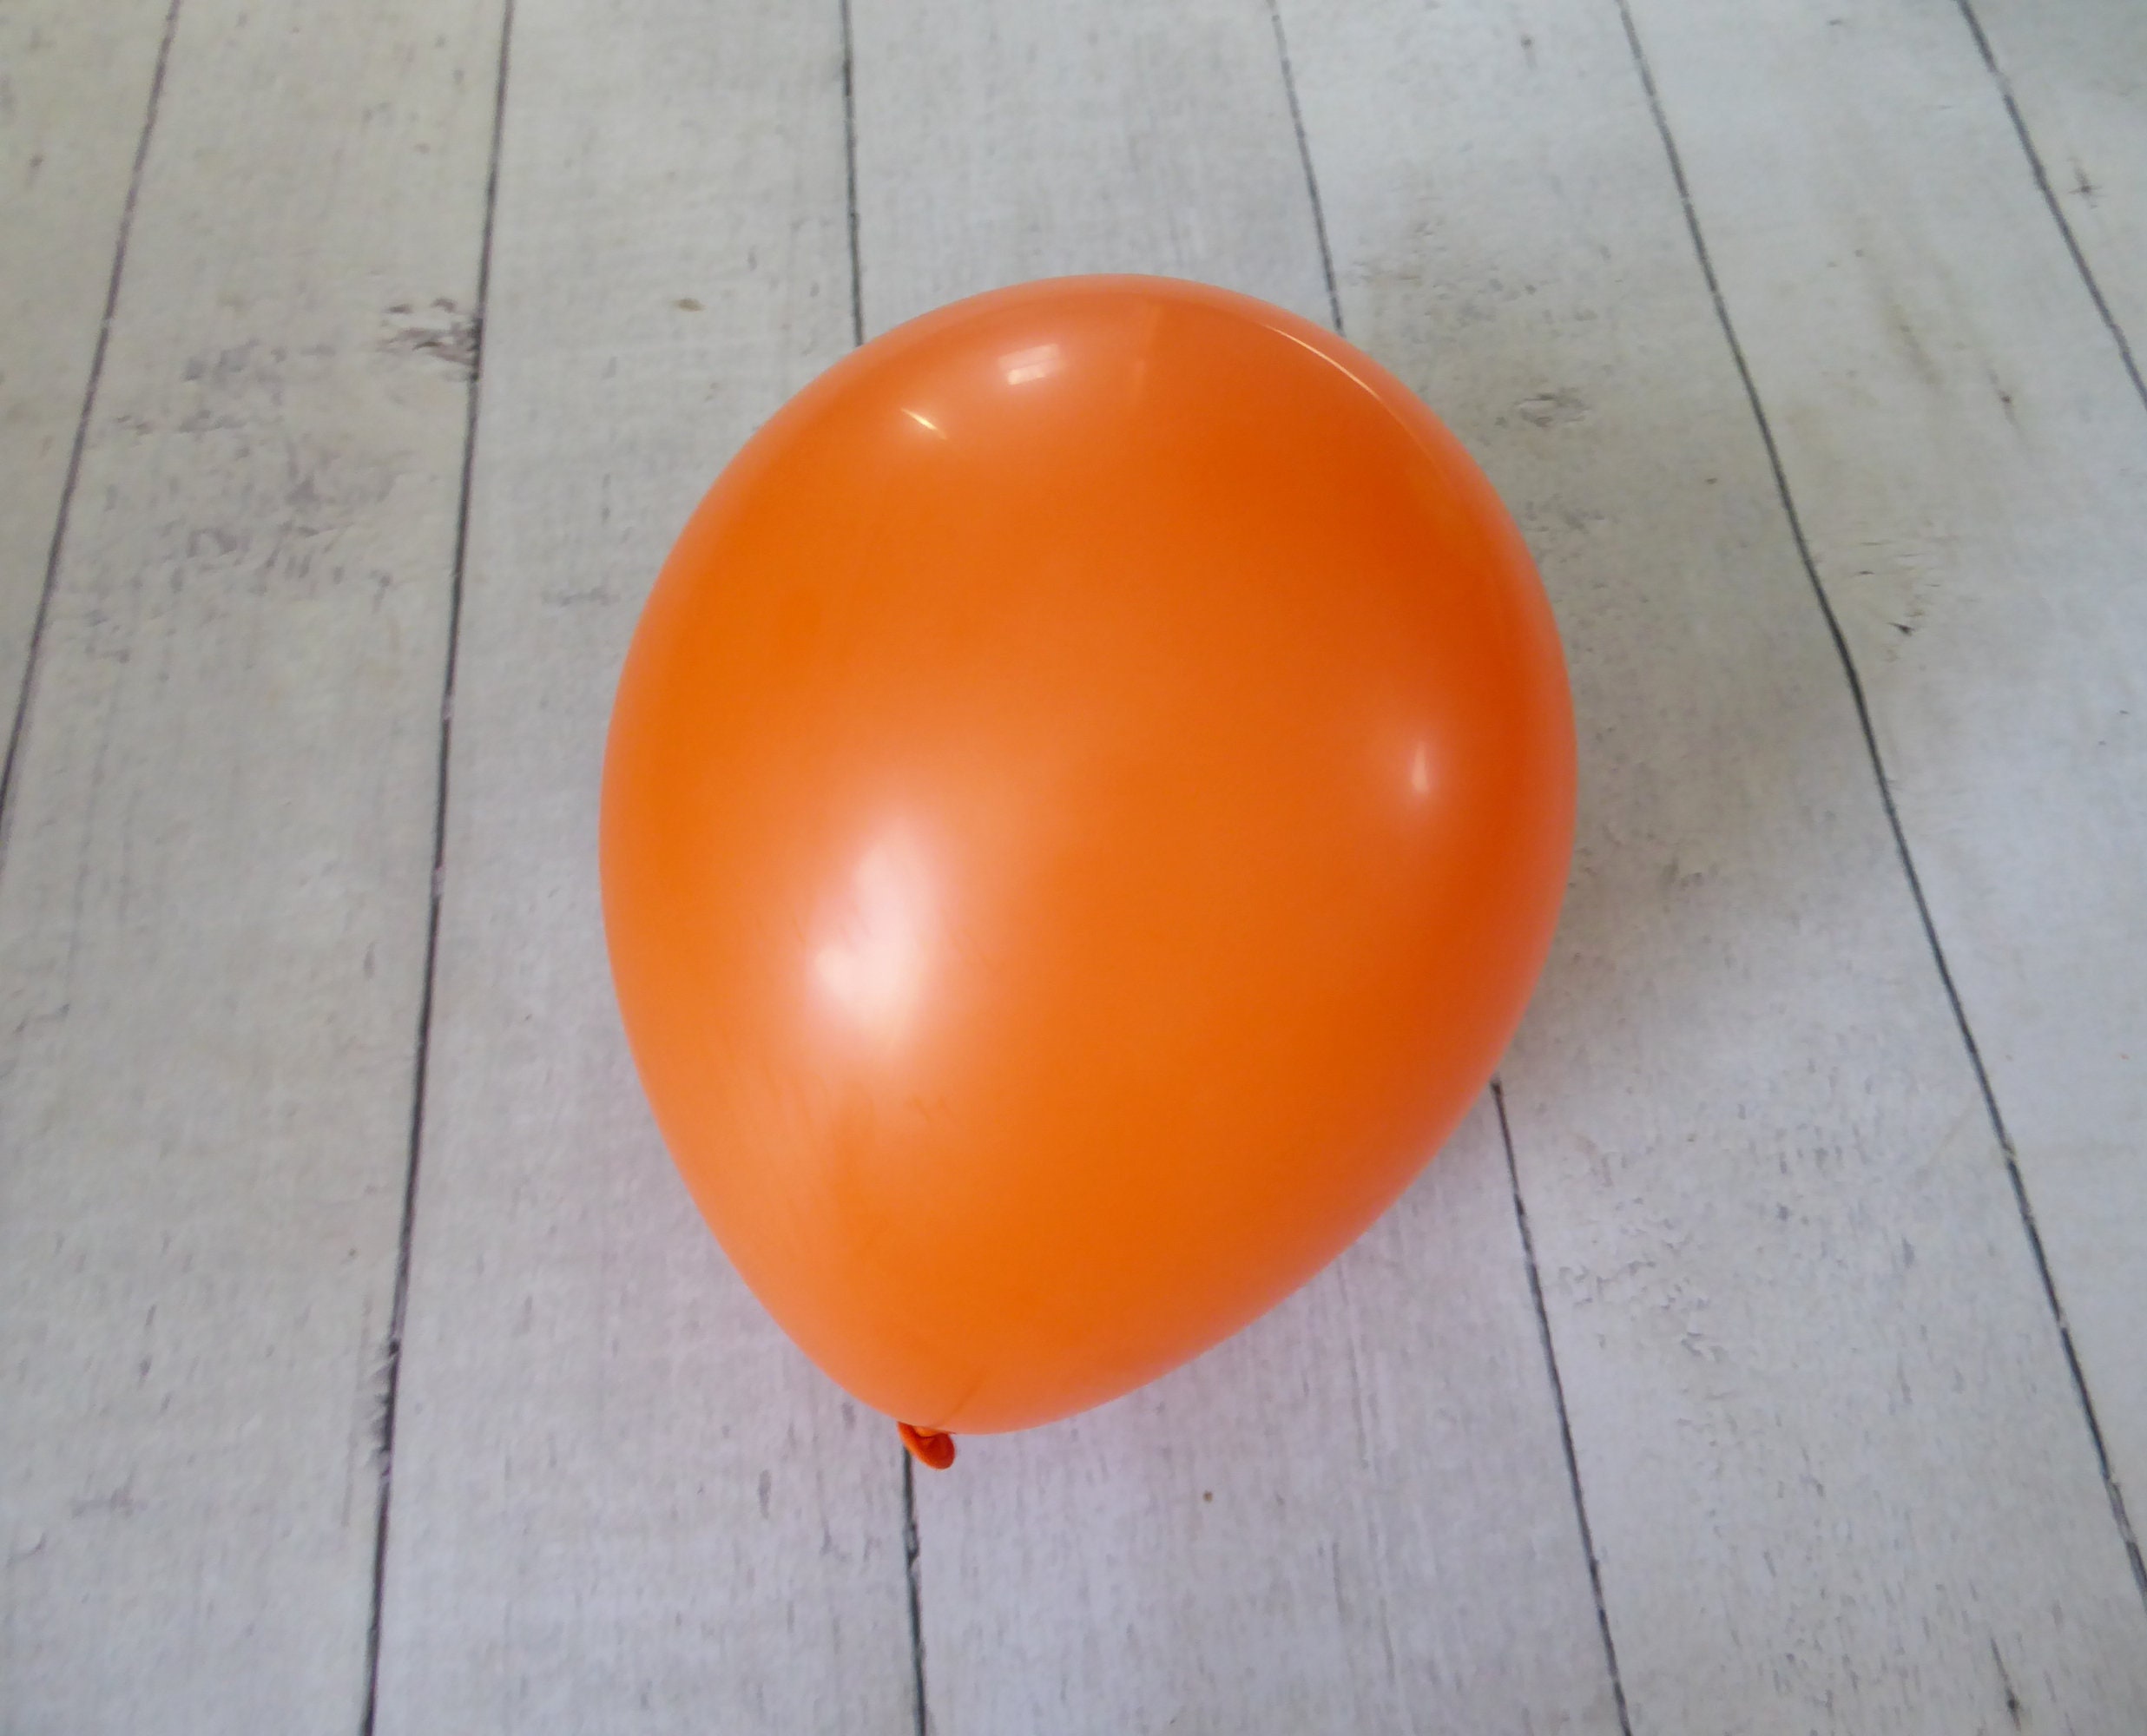 Ballon Orange fluo X100pcs